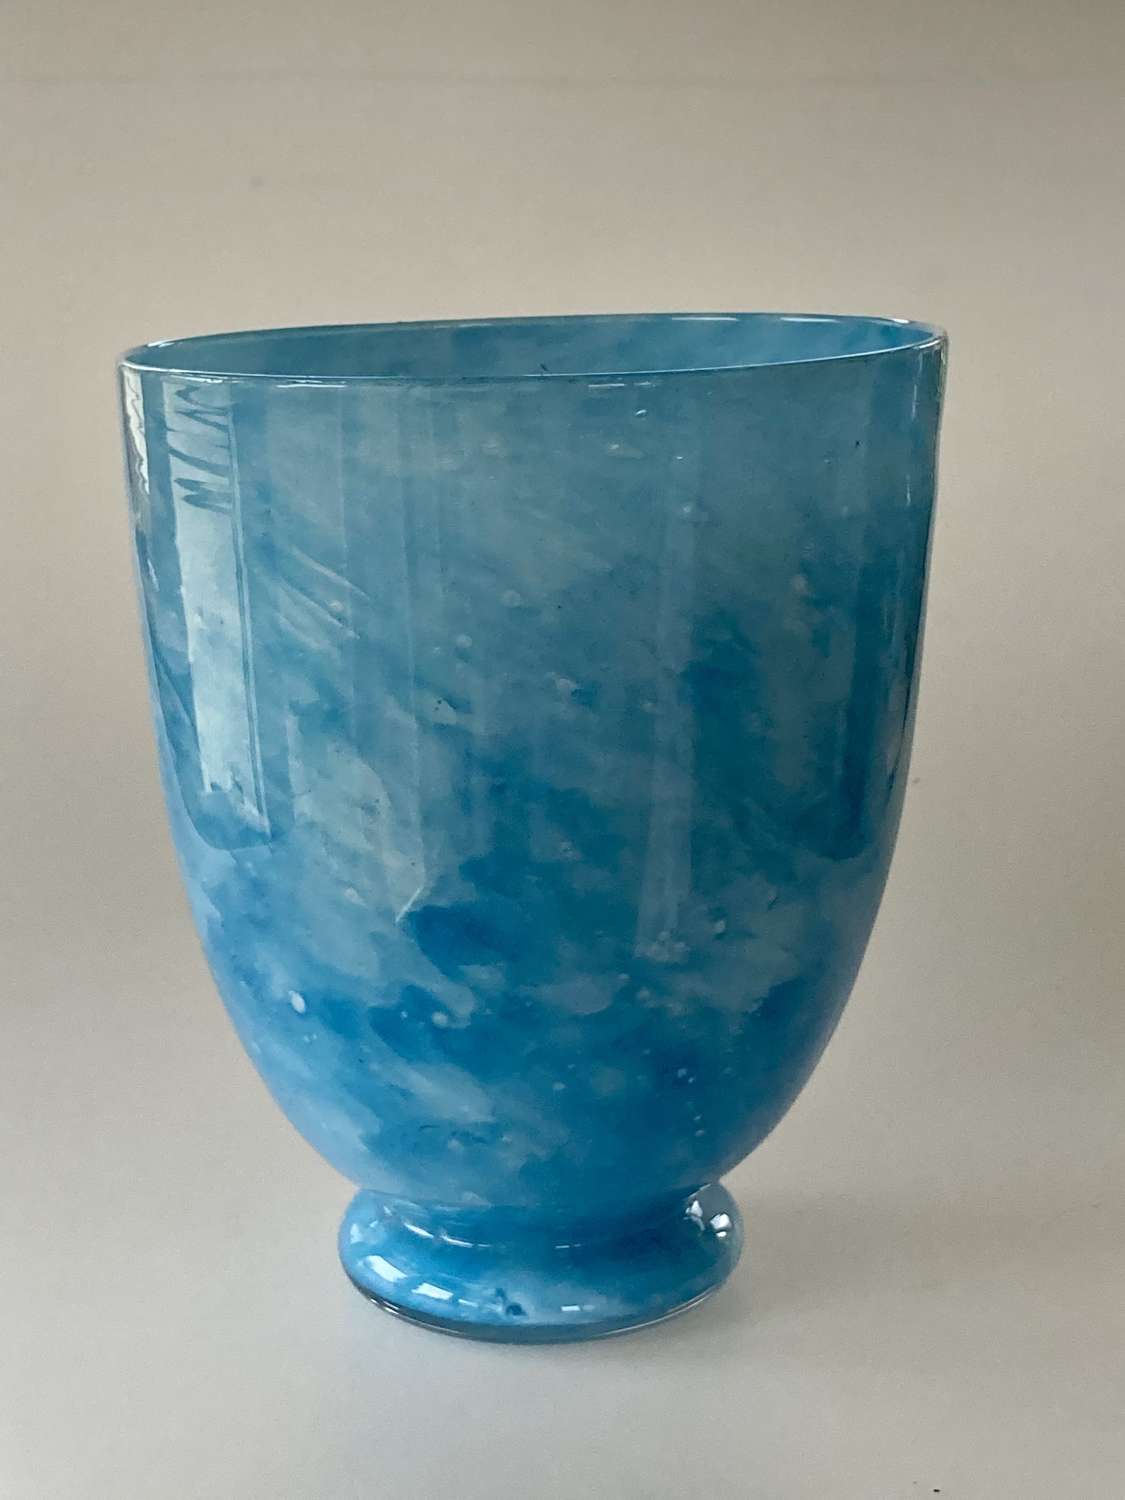 Pale blue cloudy vase